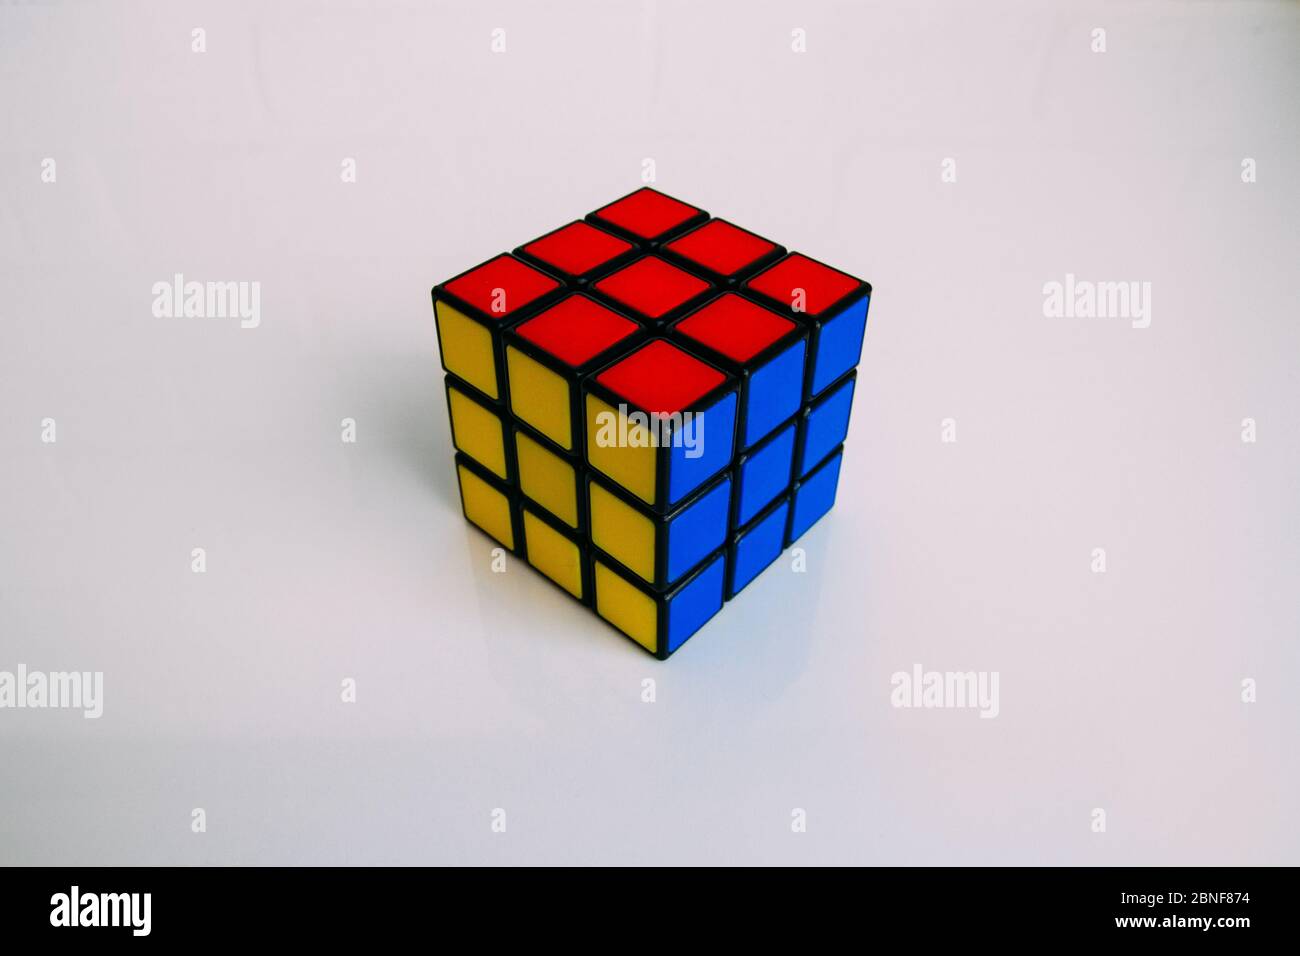 LAS VEGAS, USA - 30. Jun 2019: Ein farbenfroher, gelöster Rubik's Cube auf weißem Hintergrund. Stockfoto